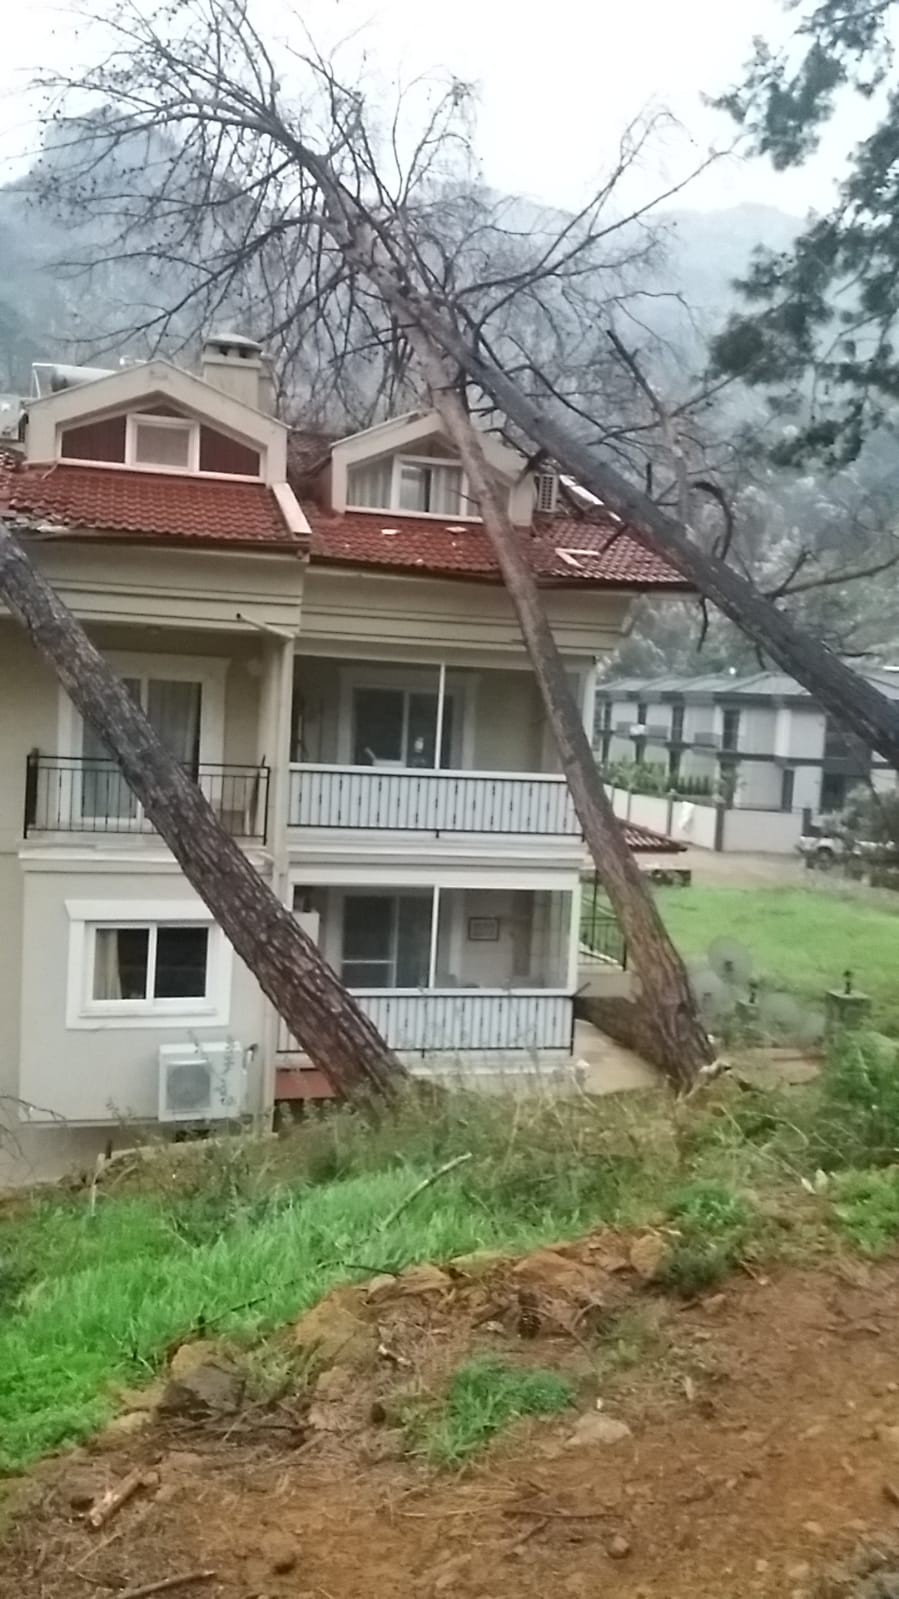 Fırtına ağaçları devirdi, lüks araç ve bir ev zarar gördü